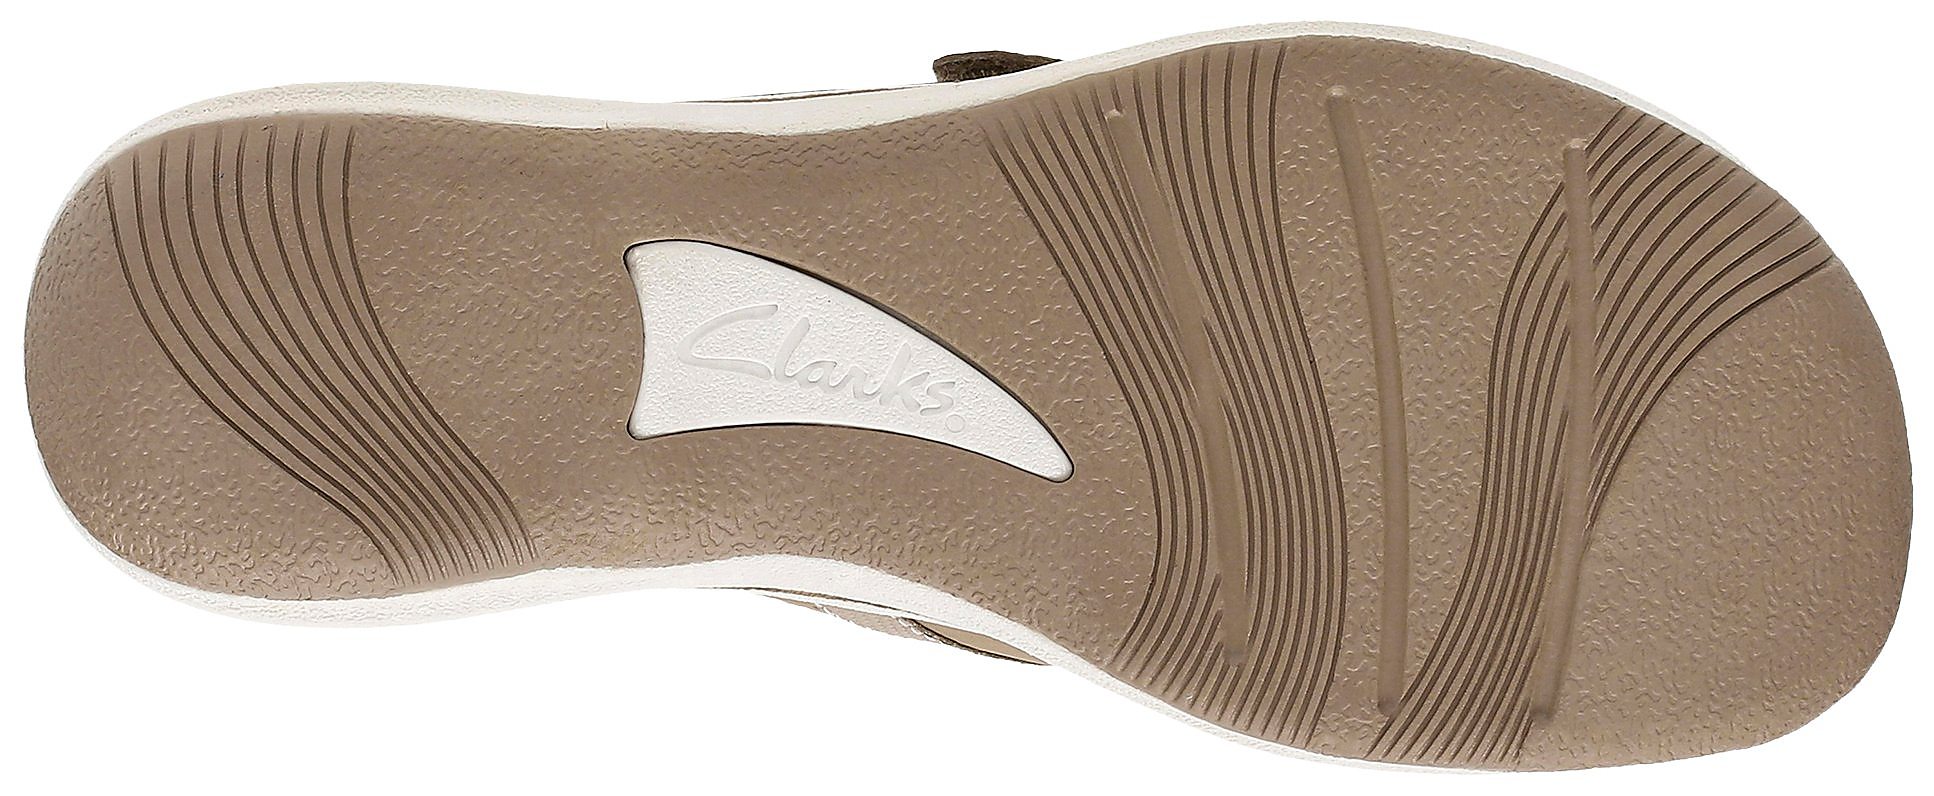 Clarks Womens Breeze Sea Flip Flops Comfort Summer Sandals 